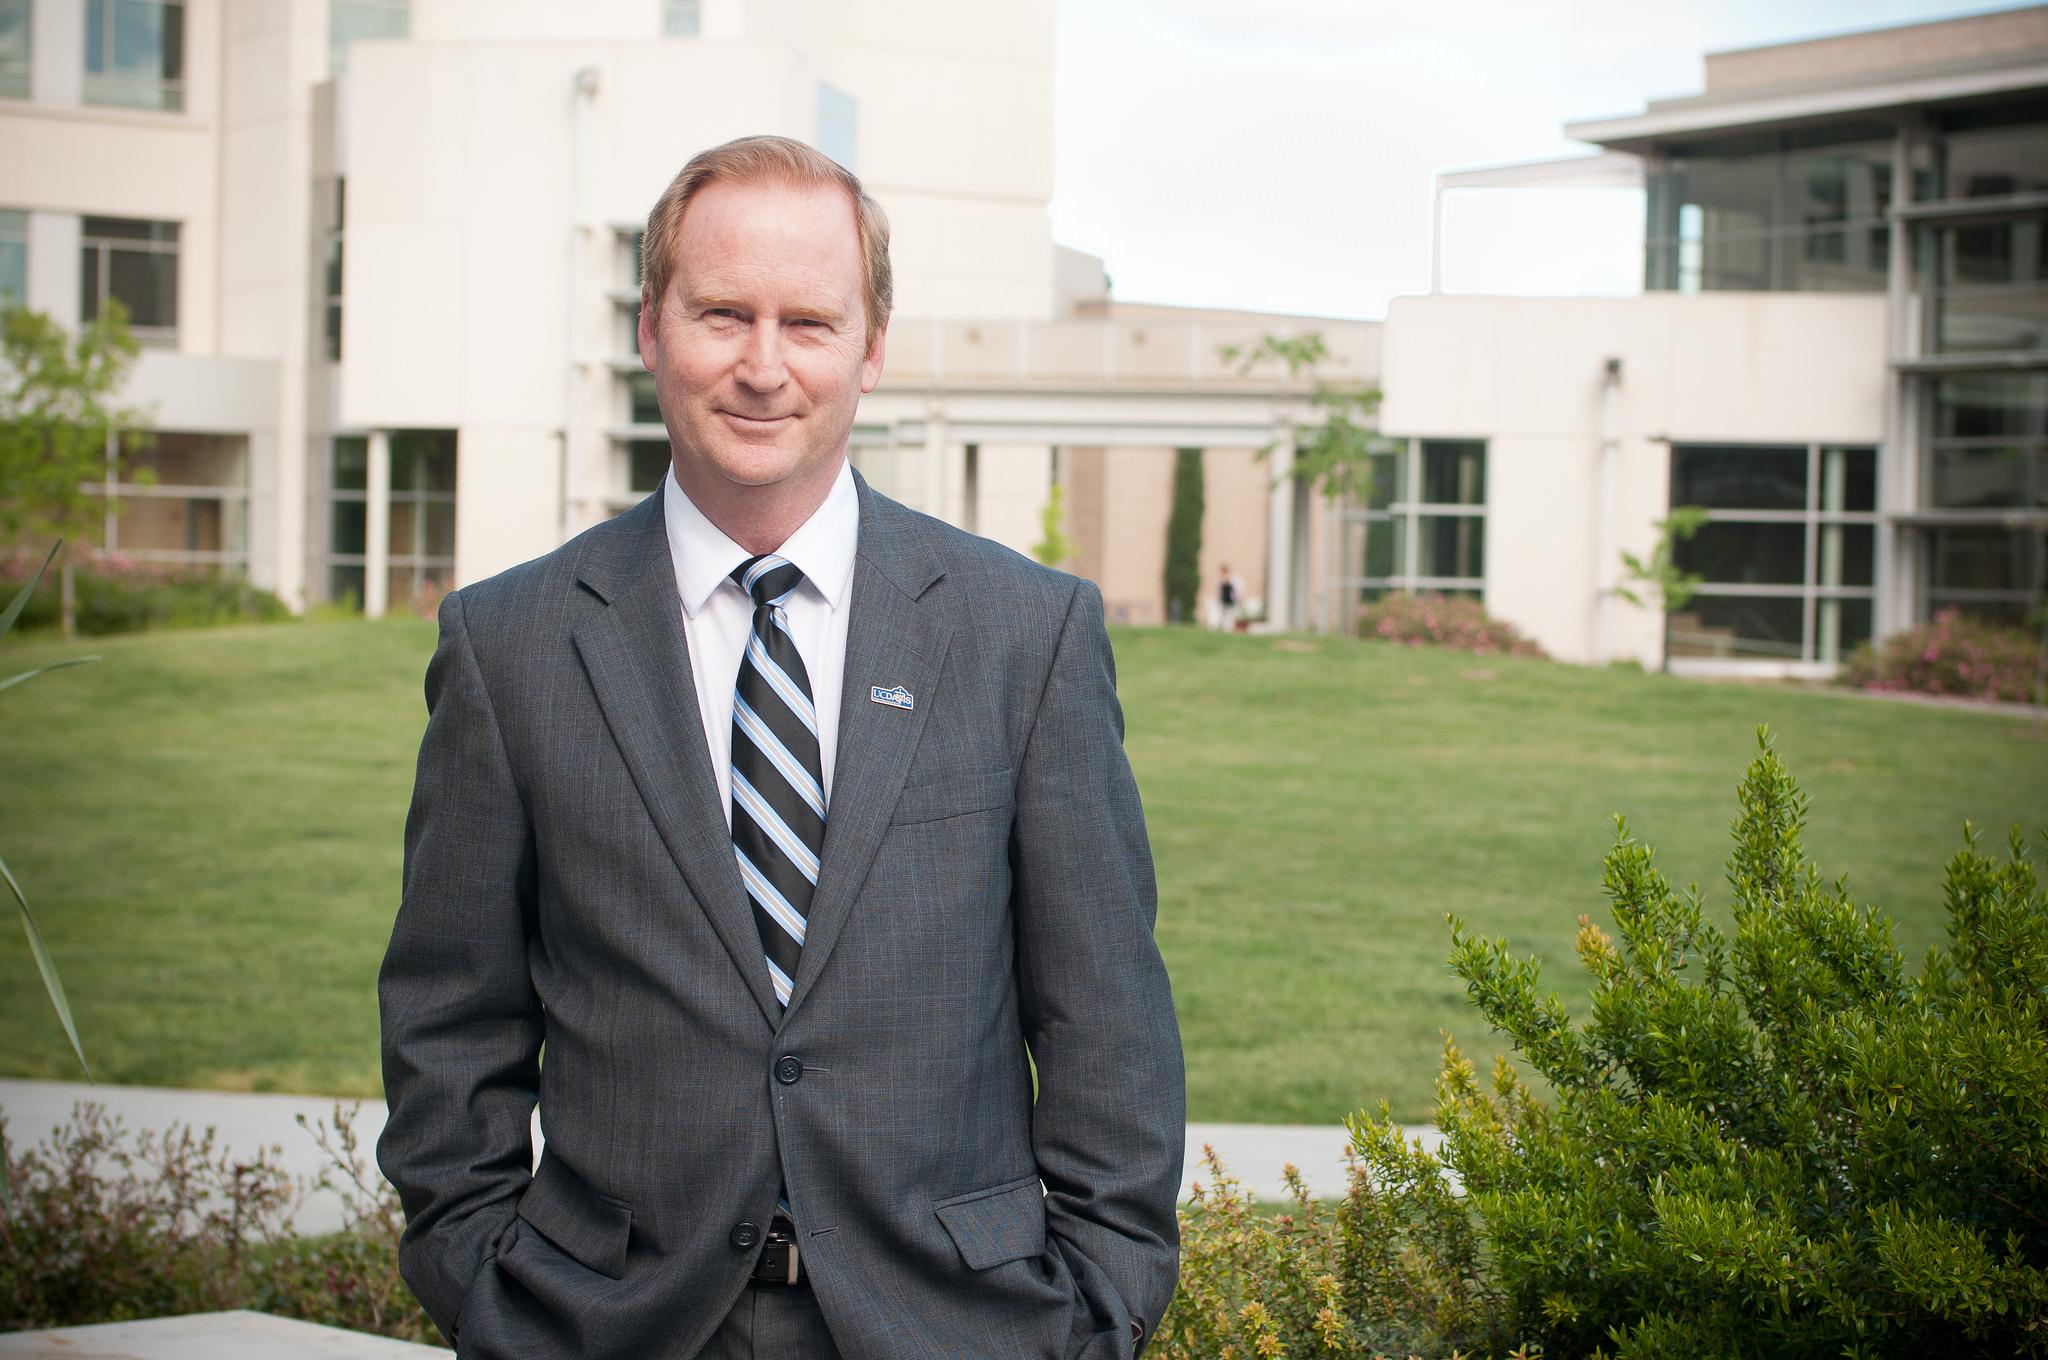 El Dr. Michael Lairmore, asumió la decanatura de la Escuela de Medicina Veterinaria de UC Davis, el año 2011.